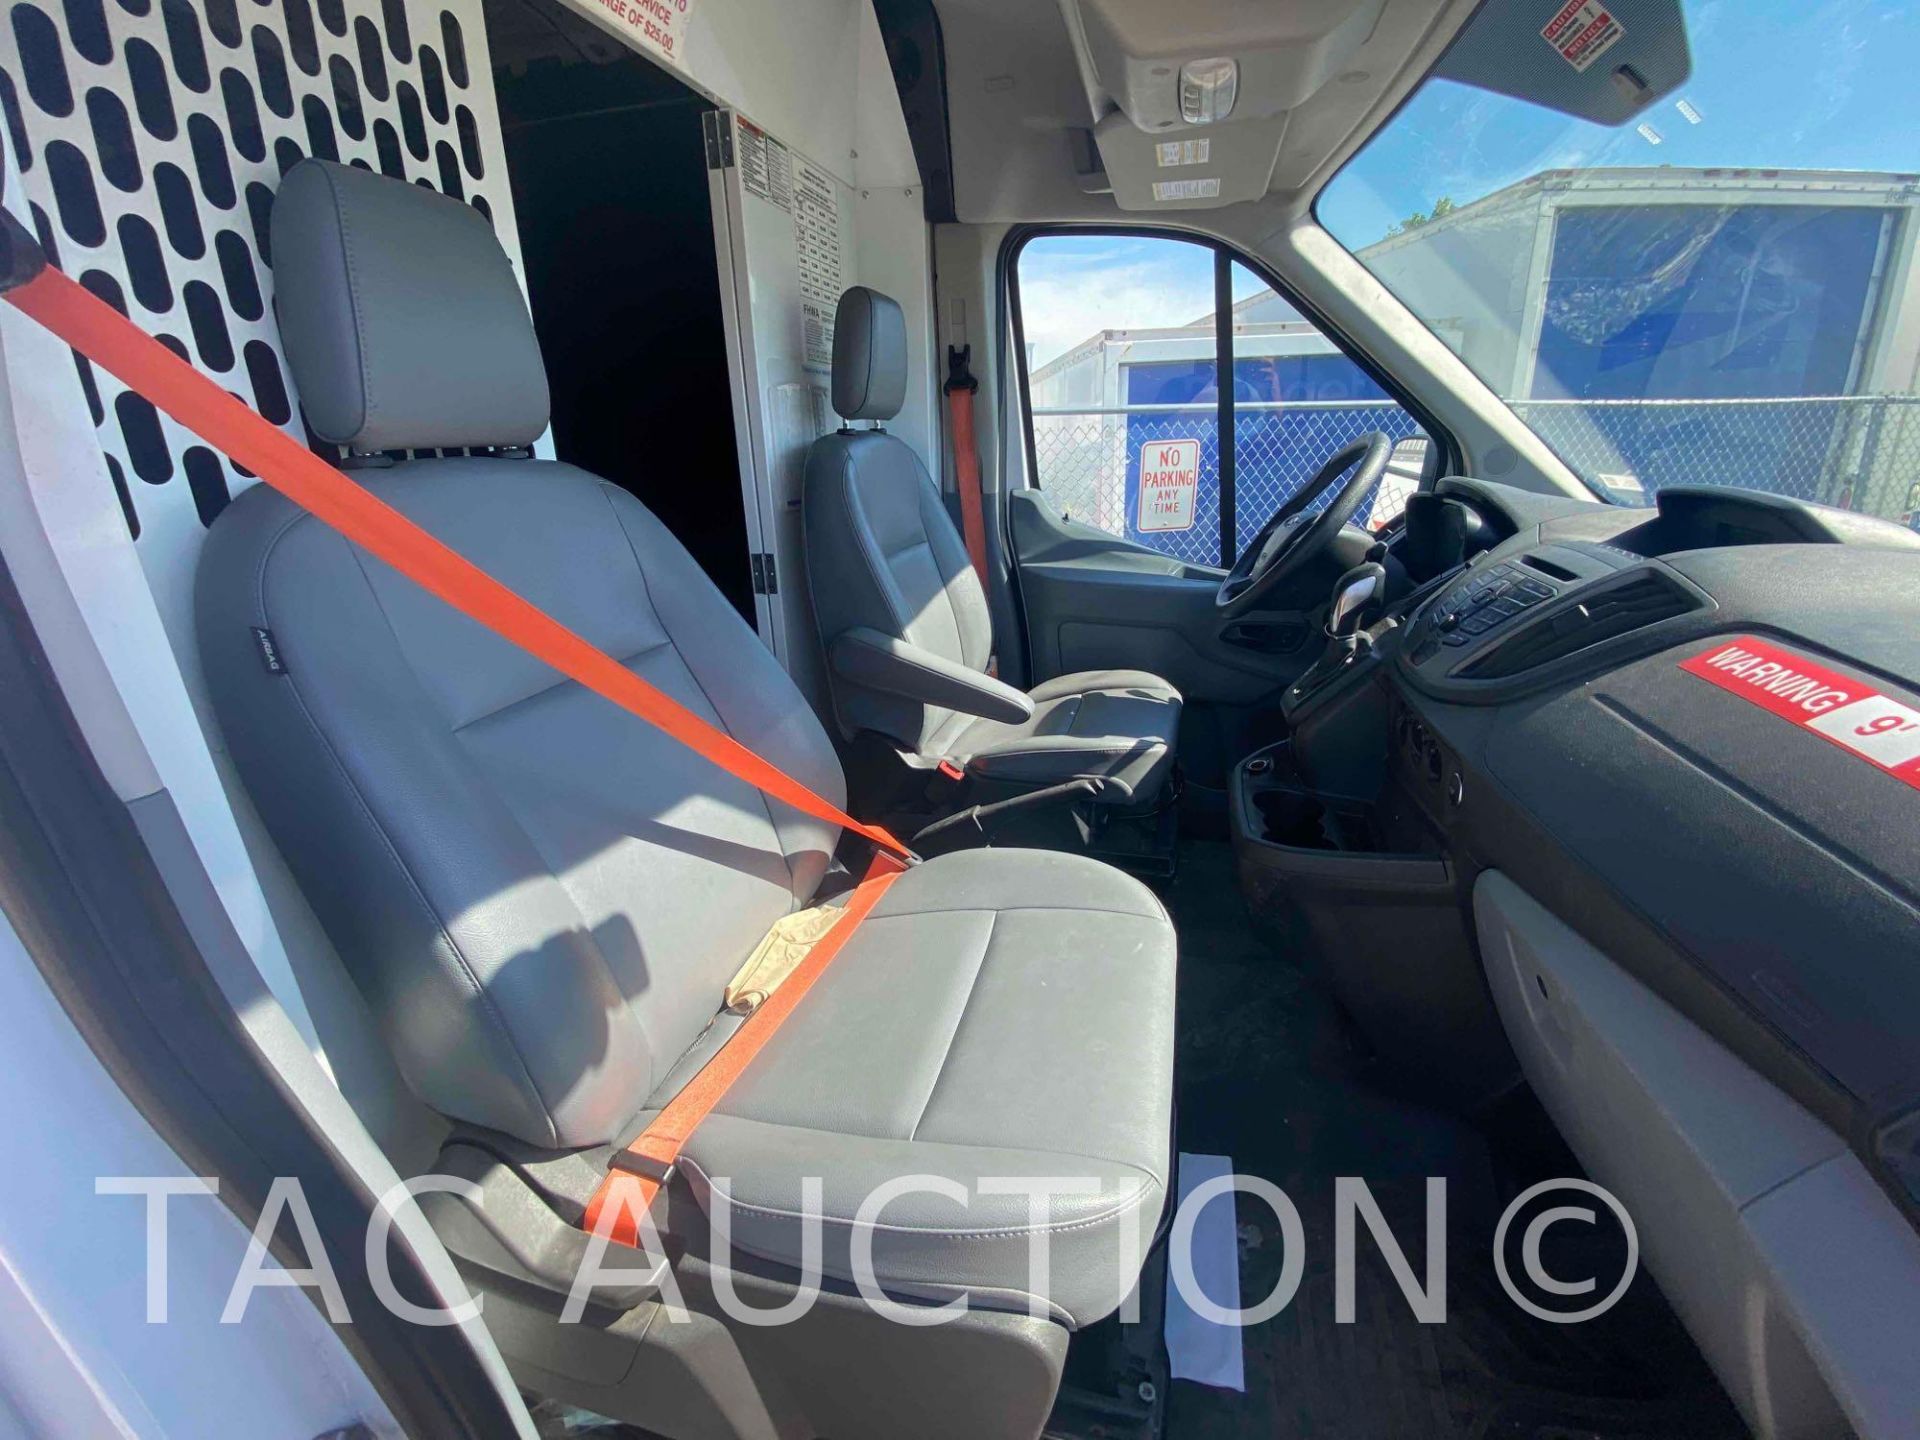 2019 Ford Transit 150 Cargo Van - Image 18 of 41